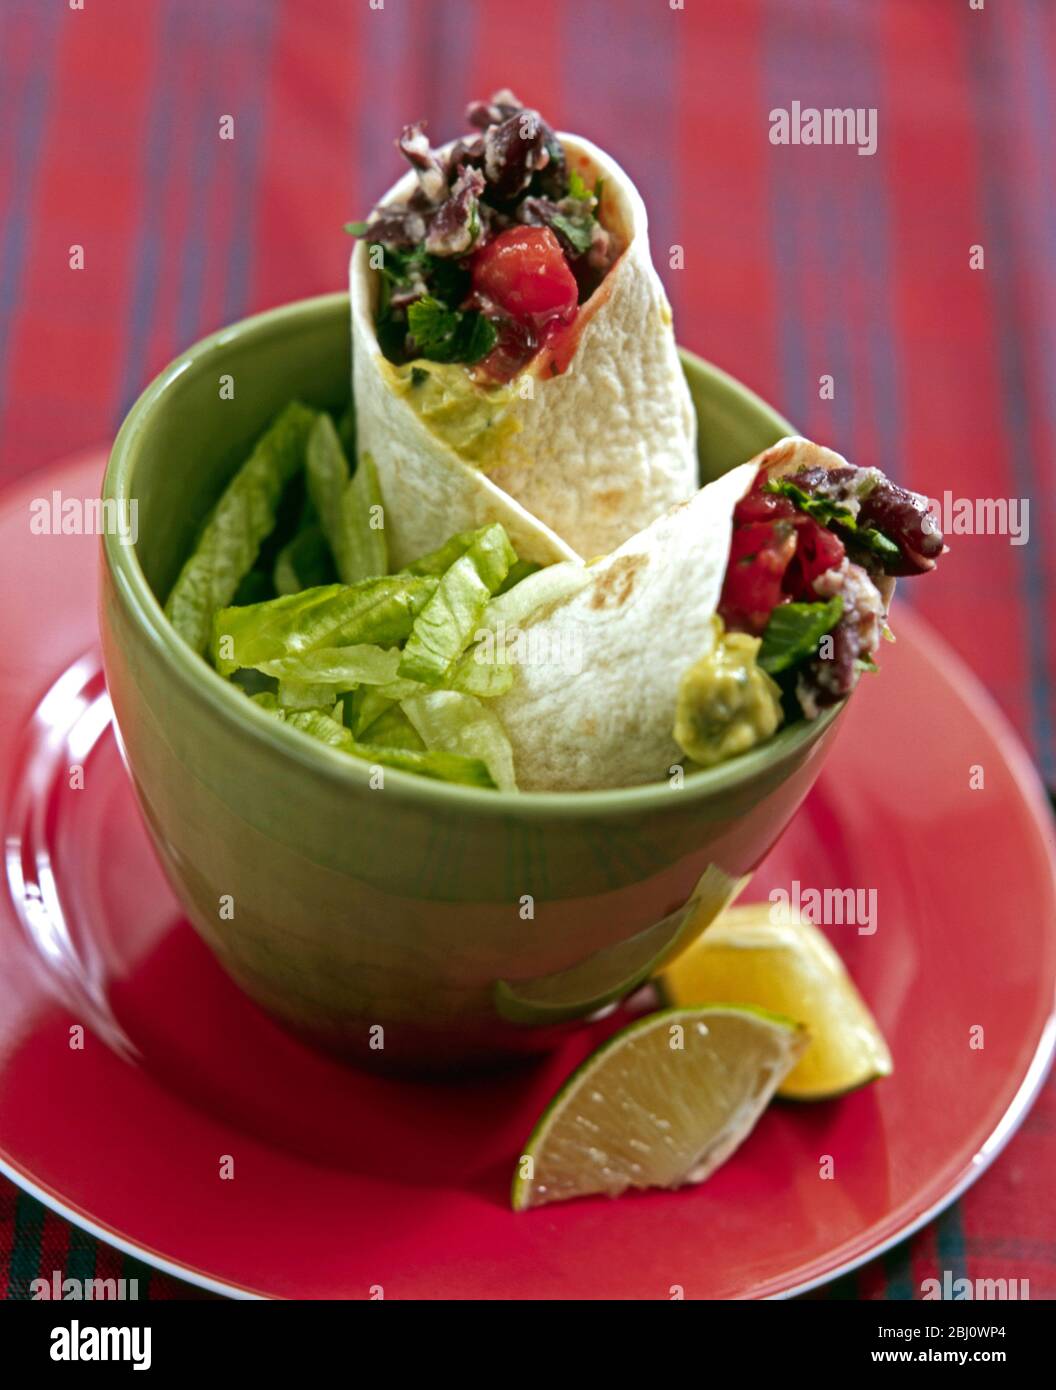 Leichtes Mittagessen mit Chili-Bohnen-Mischung in weichen Tortillas mit Salat und Zitronenstücke in grüner Schüssel verpackt - Stockfoto